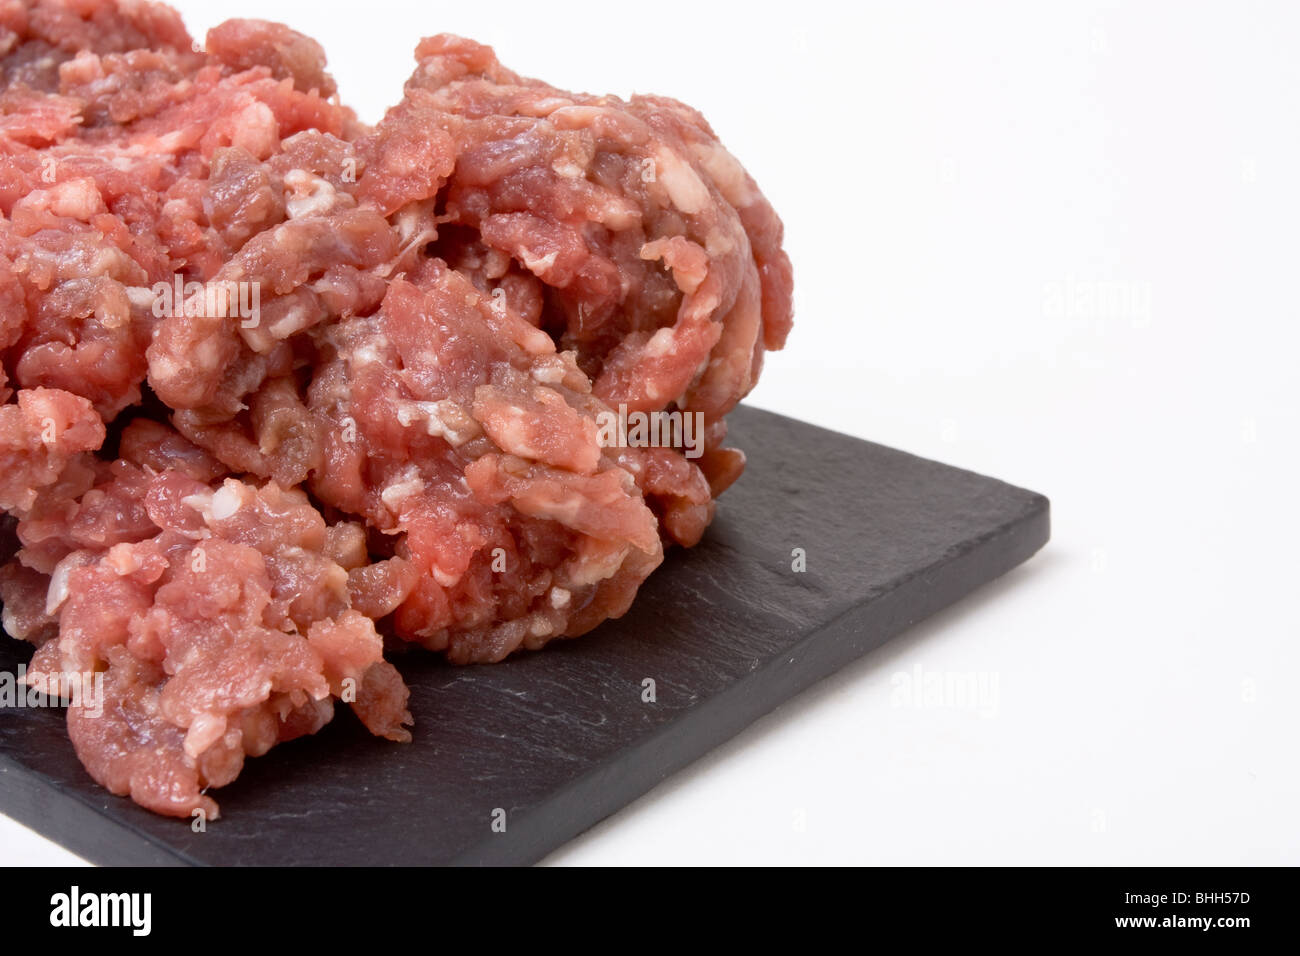 La masse ou de la viande hachée de près de vue faible contre l'arrière-plan blanc. Banque D'Images